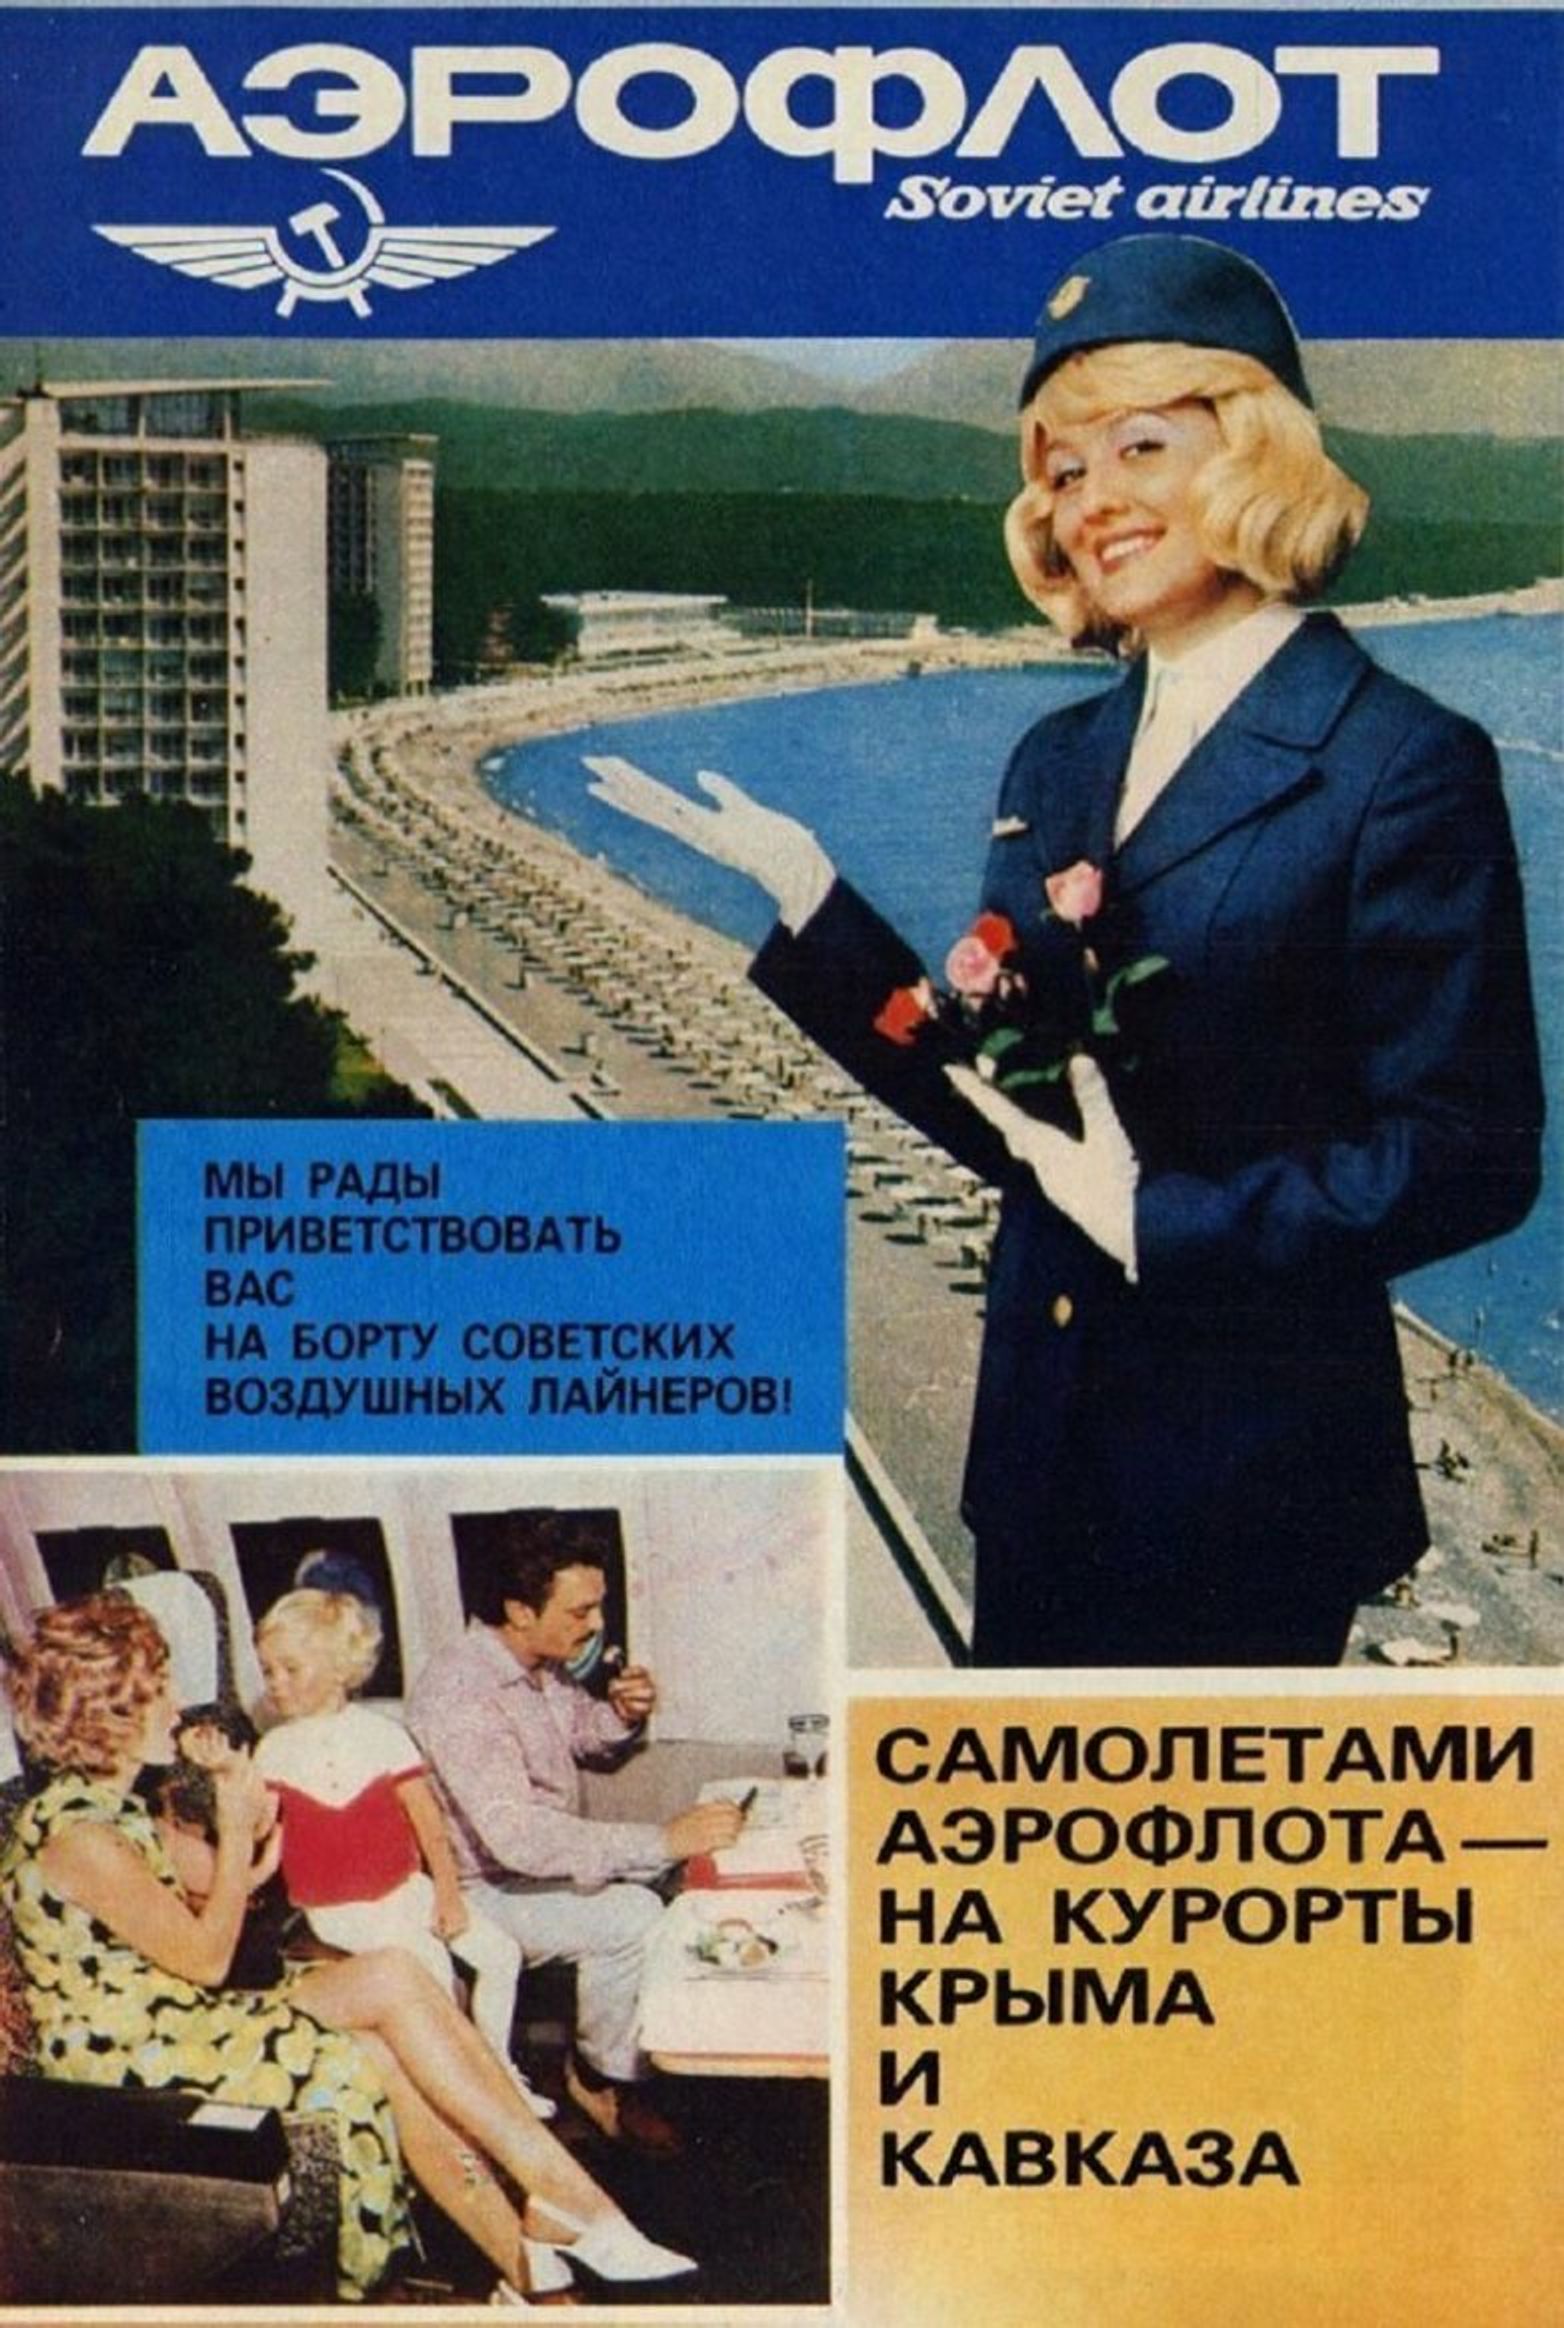 «Аэрофлот» запустит ретро-рейсы в стилистике СССР — с «Буратино» и конфетой «Взлетная»